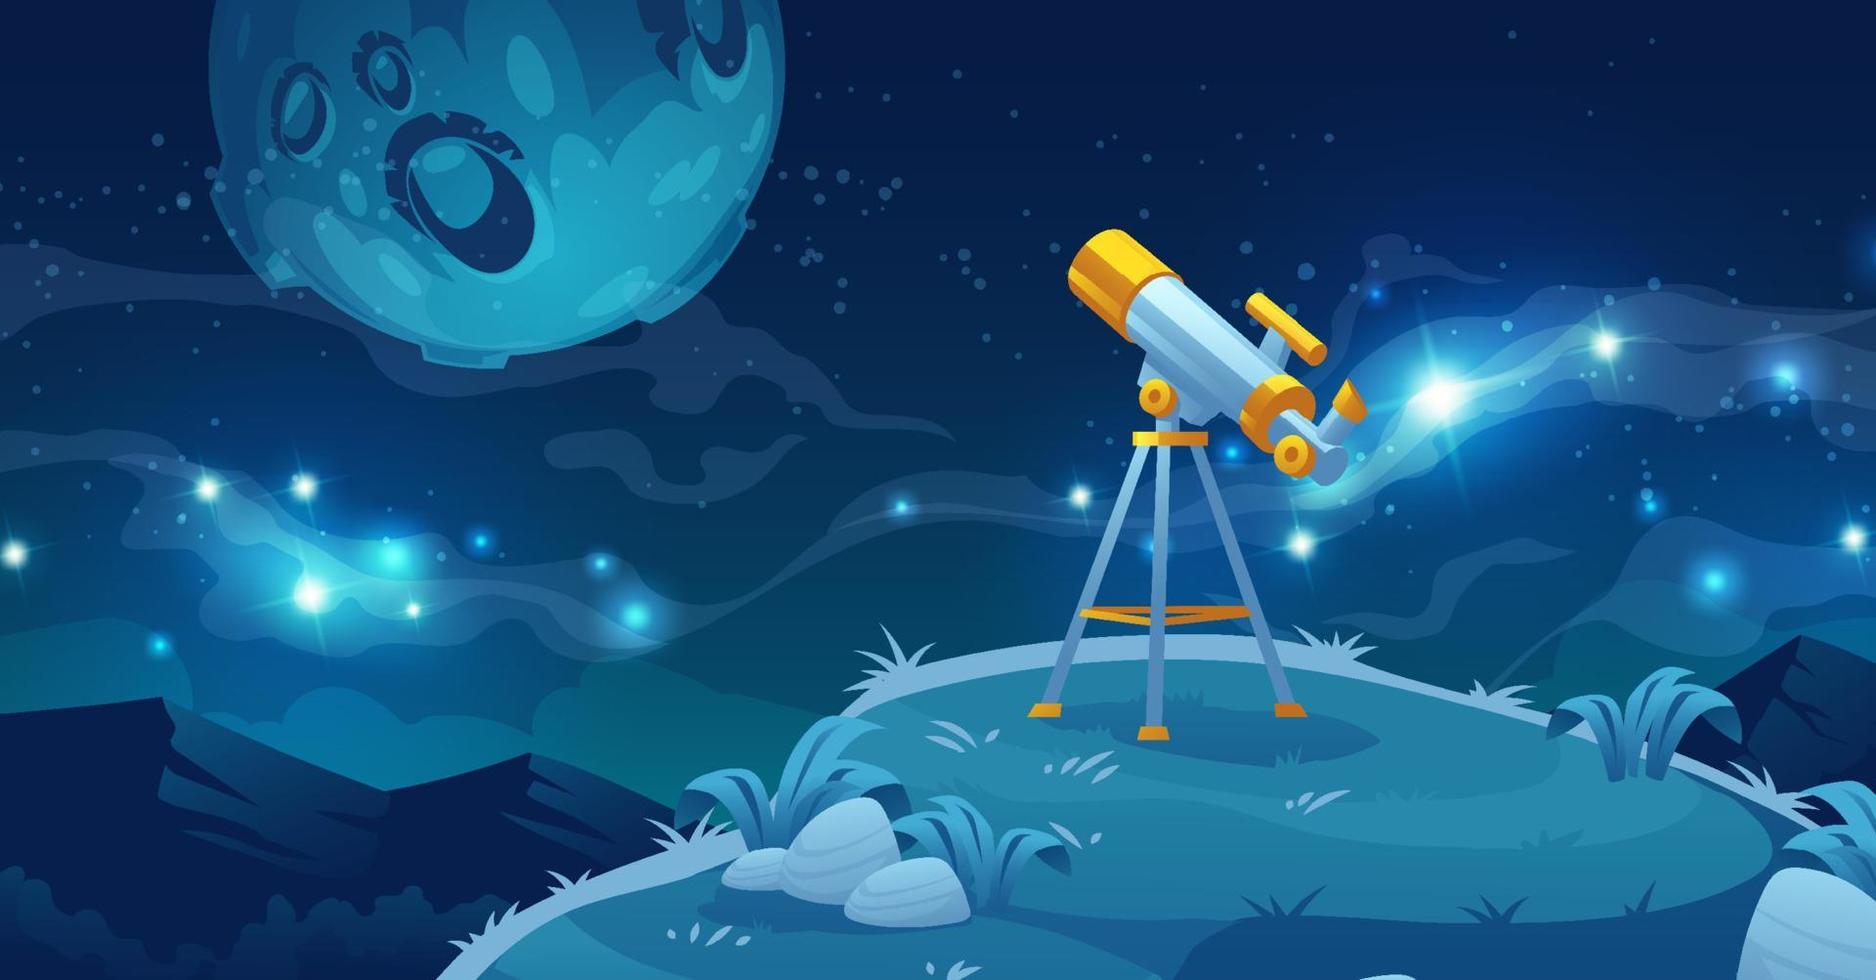 teleskop für weltraumforschung, wissenschaftliche entdeckung vektor